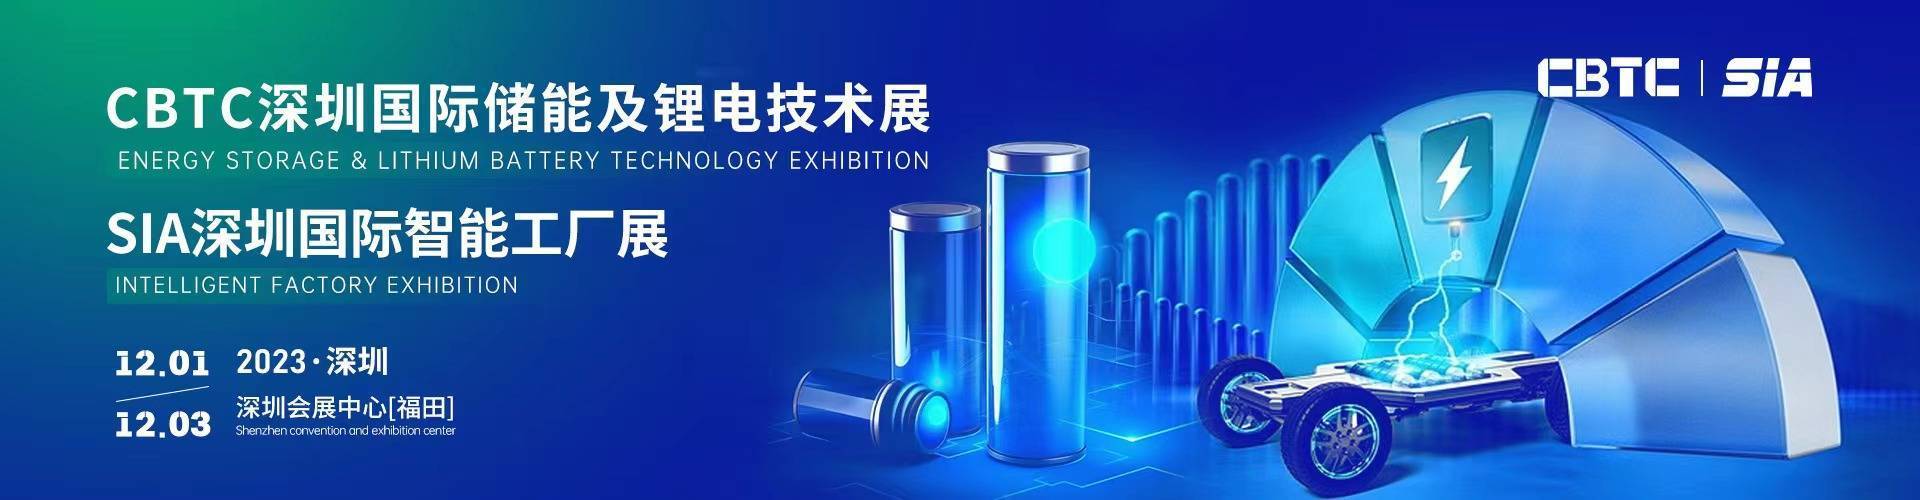 CBTC 深圳国际储能及锂电技术展